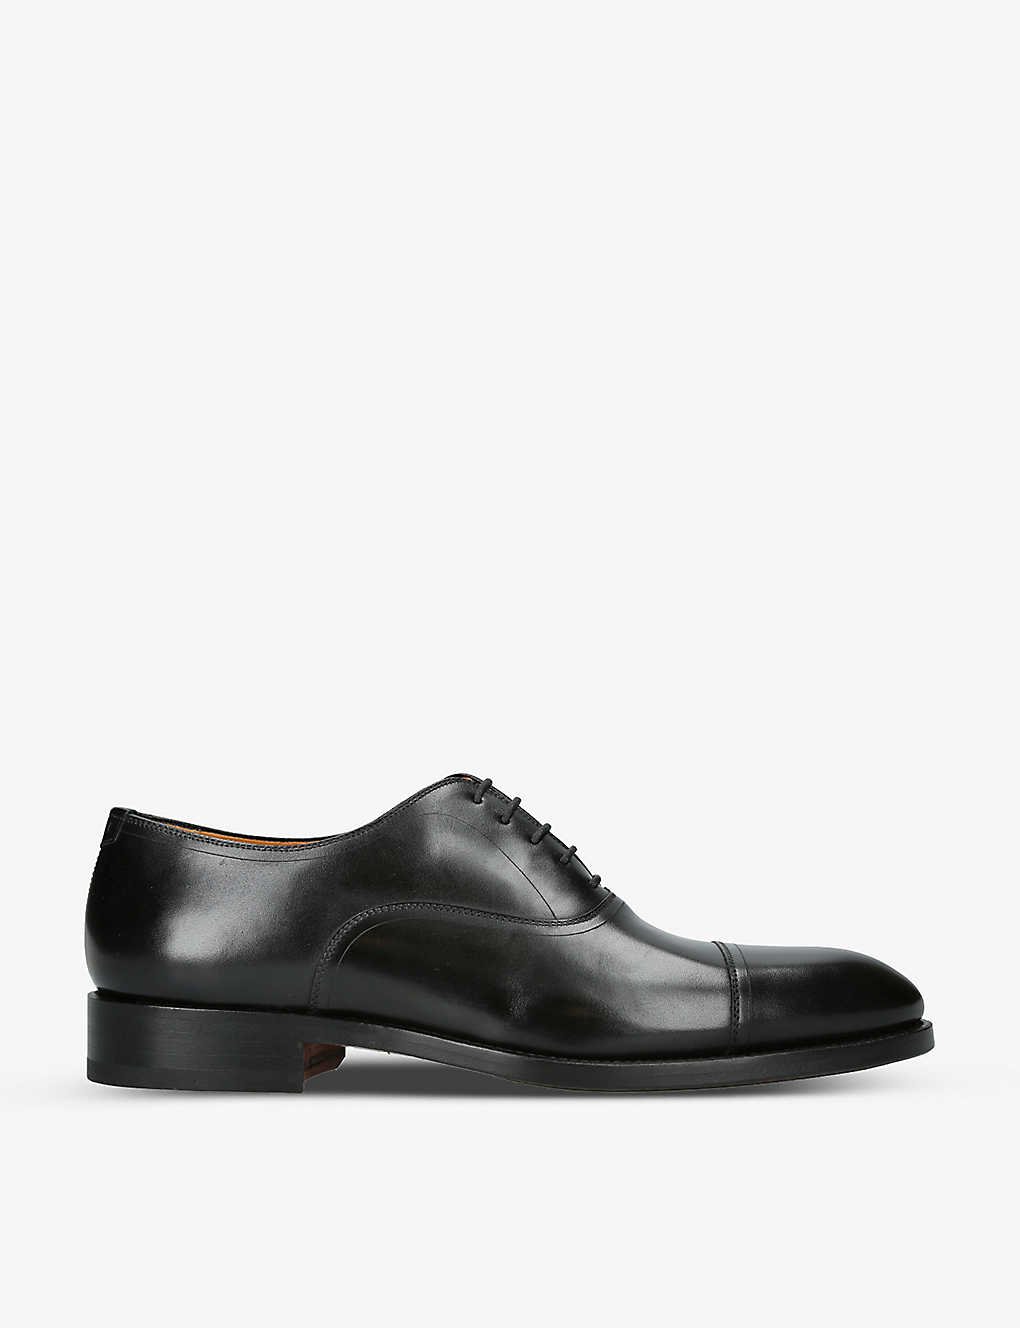 Shop Magnanni Men's Black Flex Leather Oxford Shoes